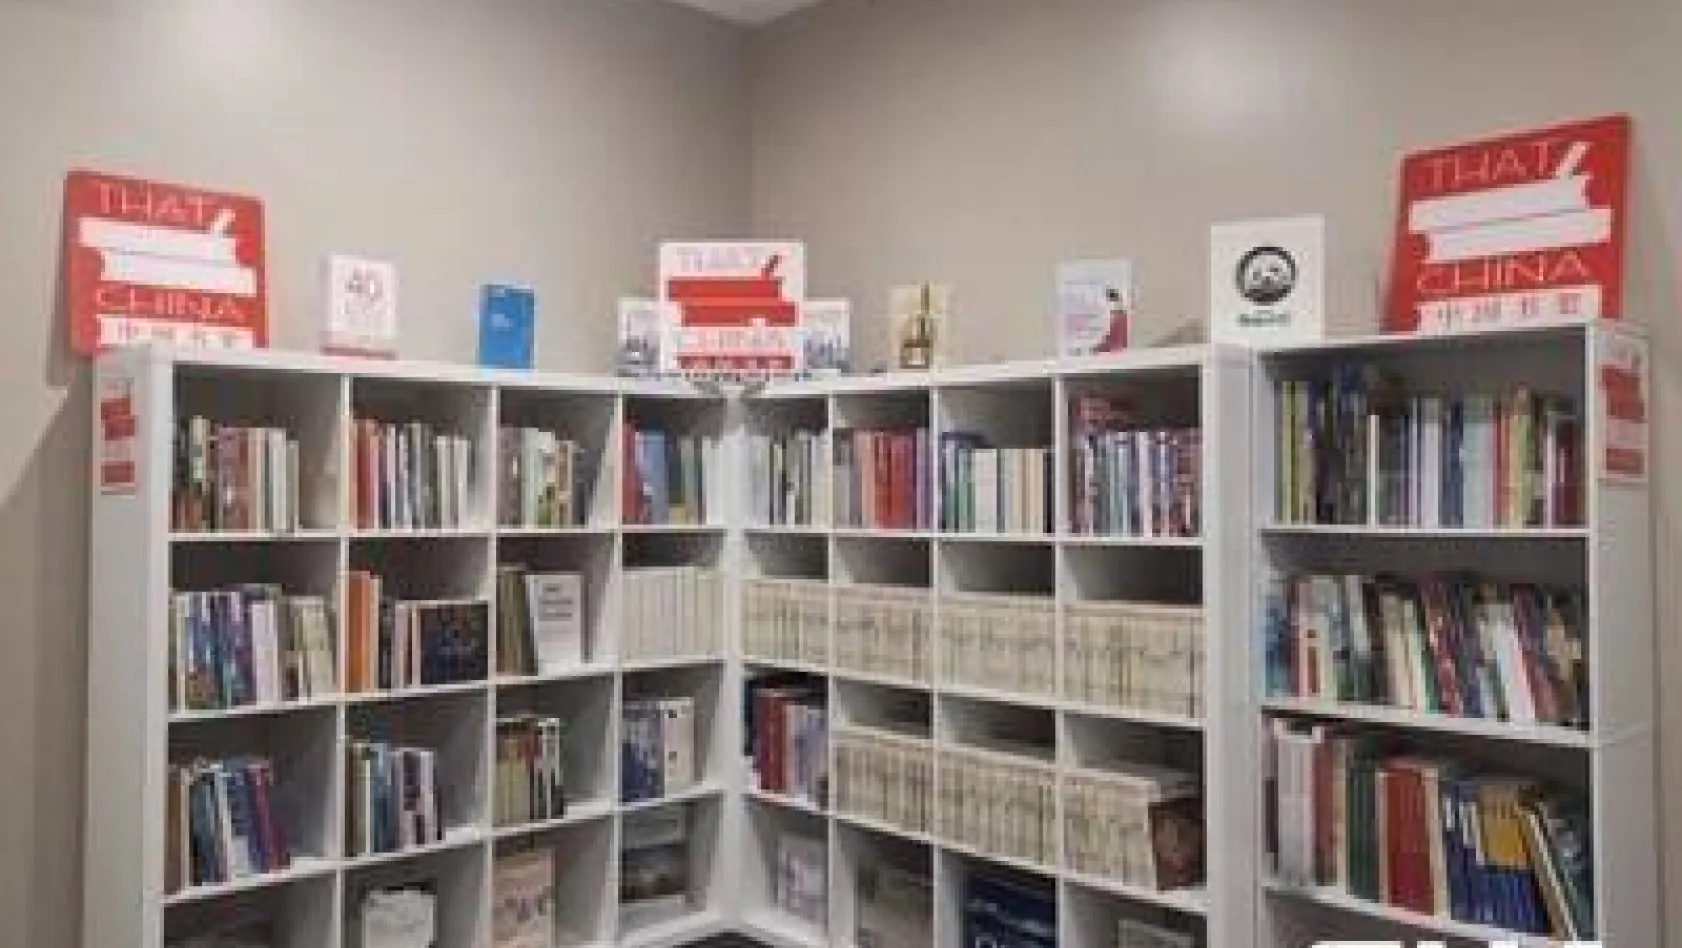 CRRC, Çin Kitap Rafı Projesi ile Avustralya'da Çin Kültürü Kütüphaneleri kuruyor